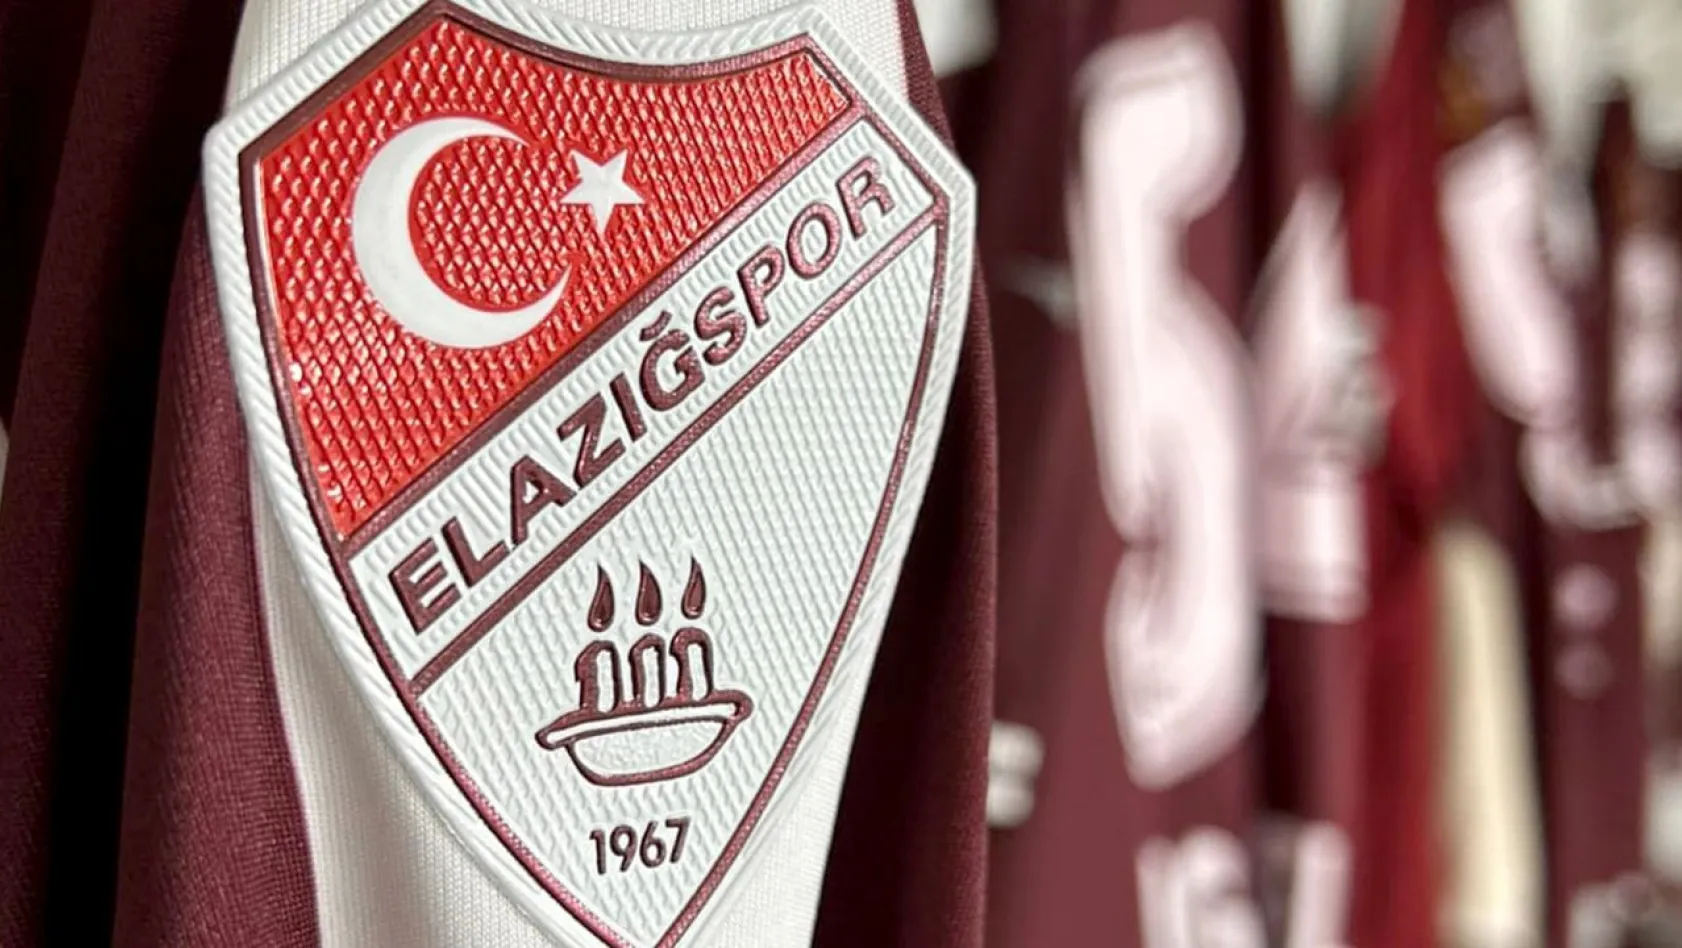 Elazığspor'da 'Olağan Mali Genel Kurul' kararı